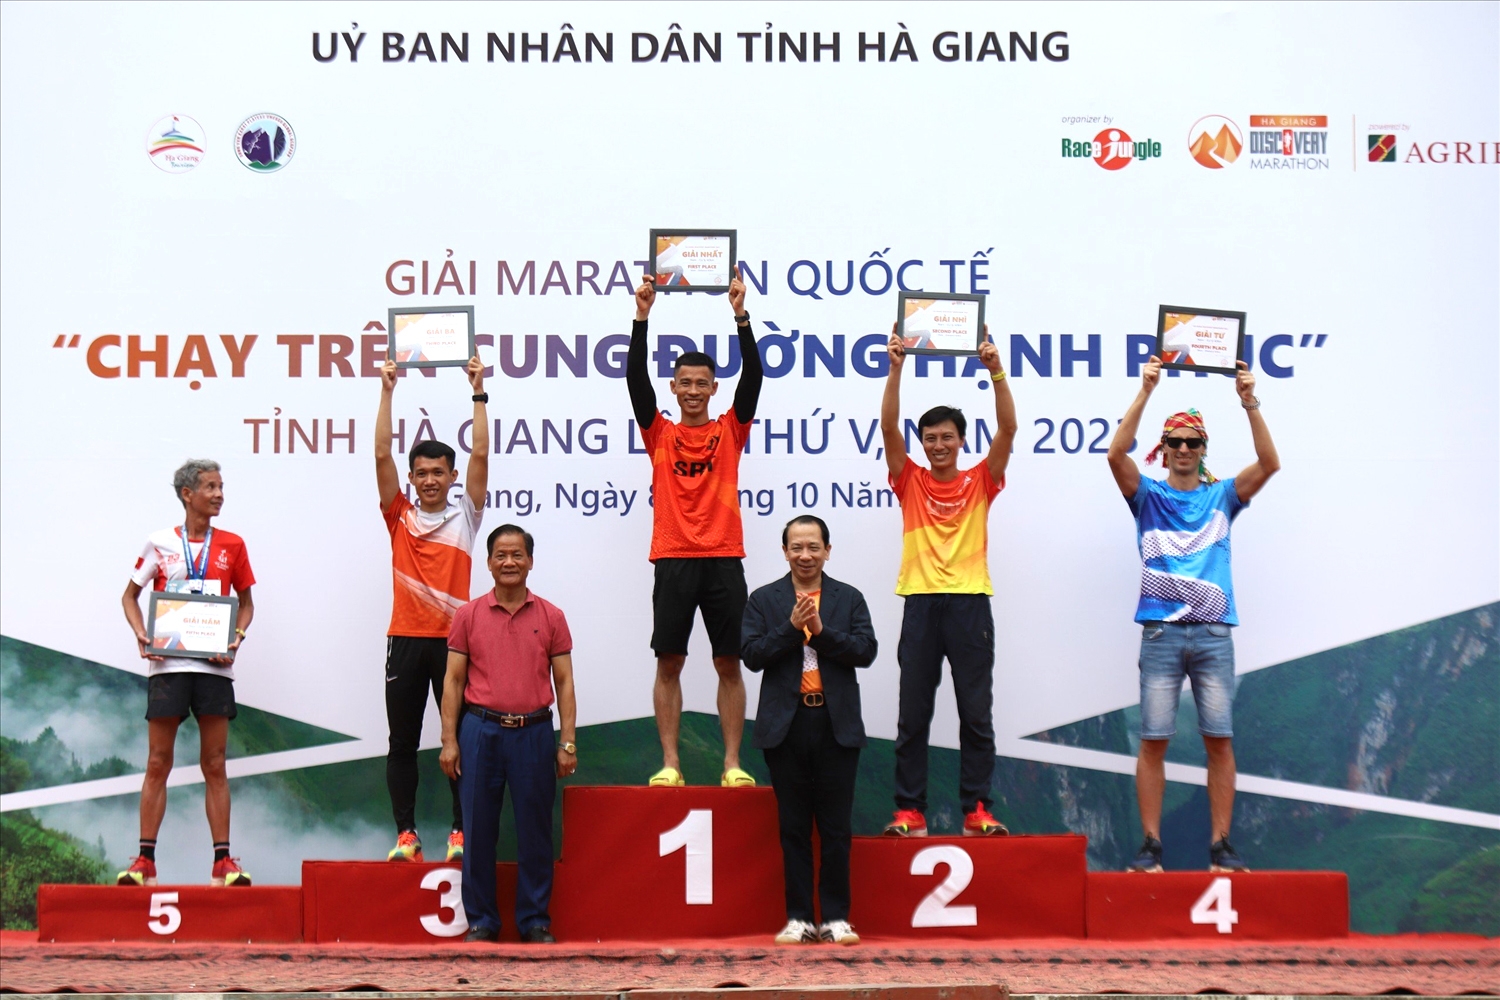 Lãng đạo tỉnh Hà Giang trao giải cho các vận động viên đạt thành tích